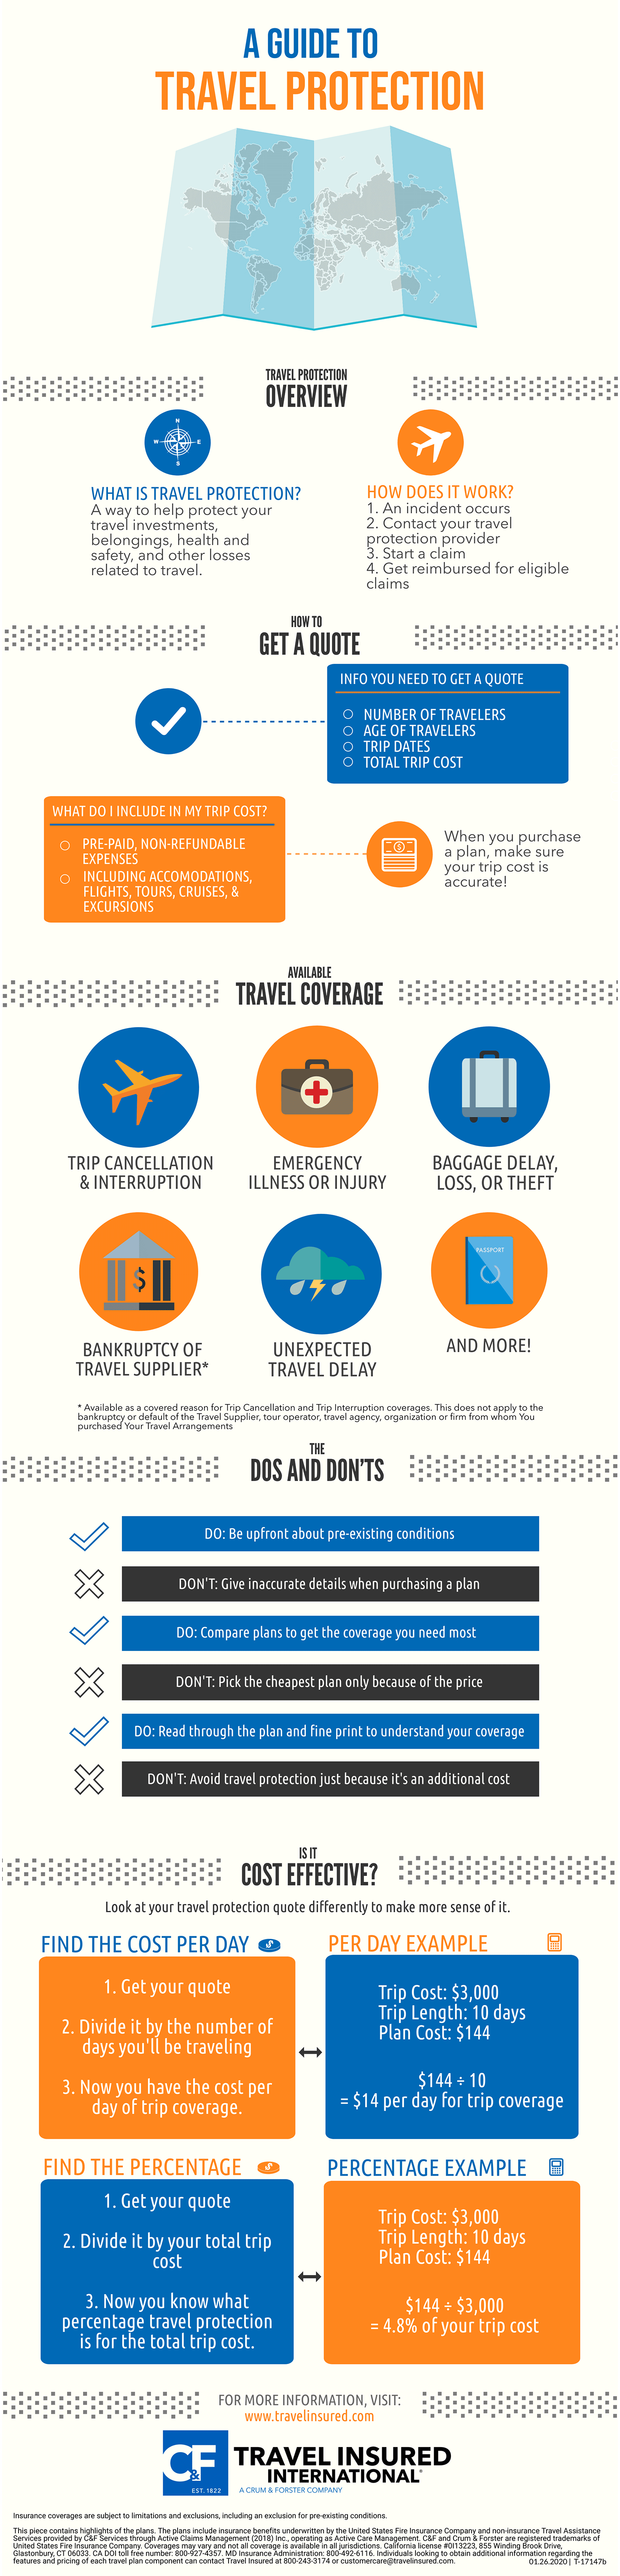 2020 Travel Insurance Guide